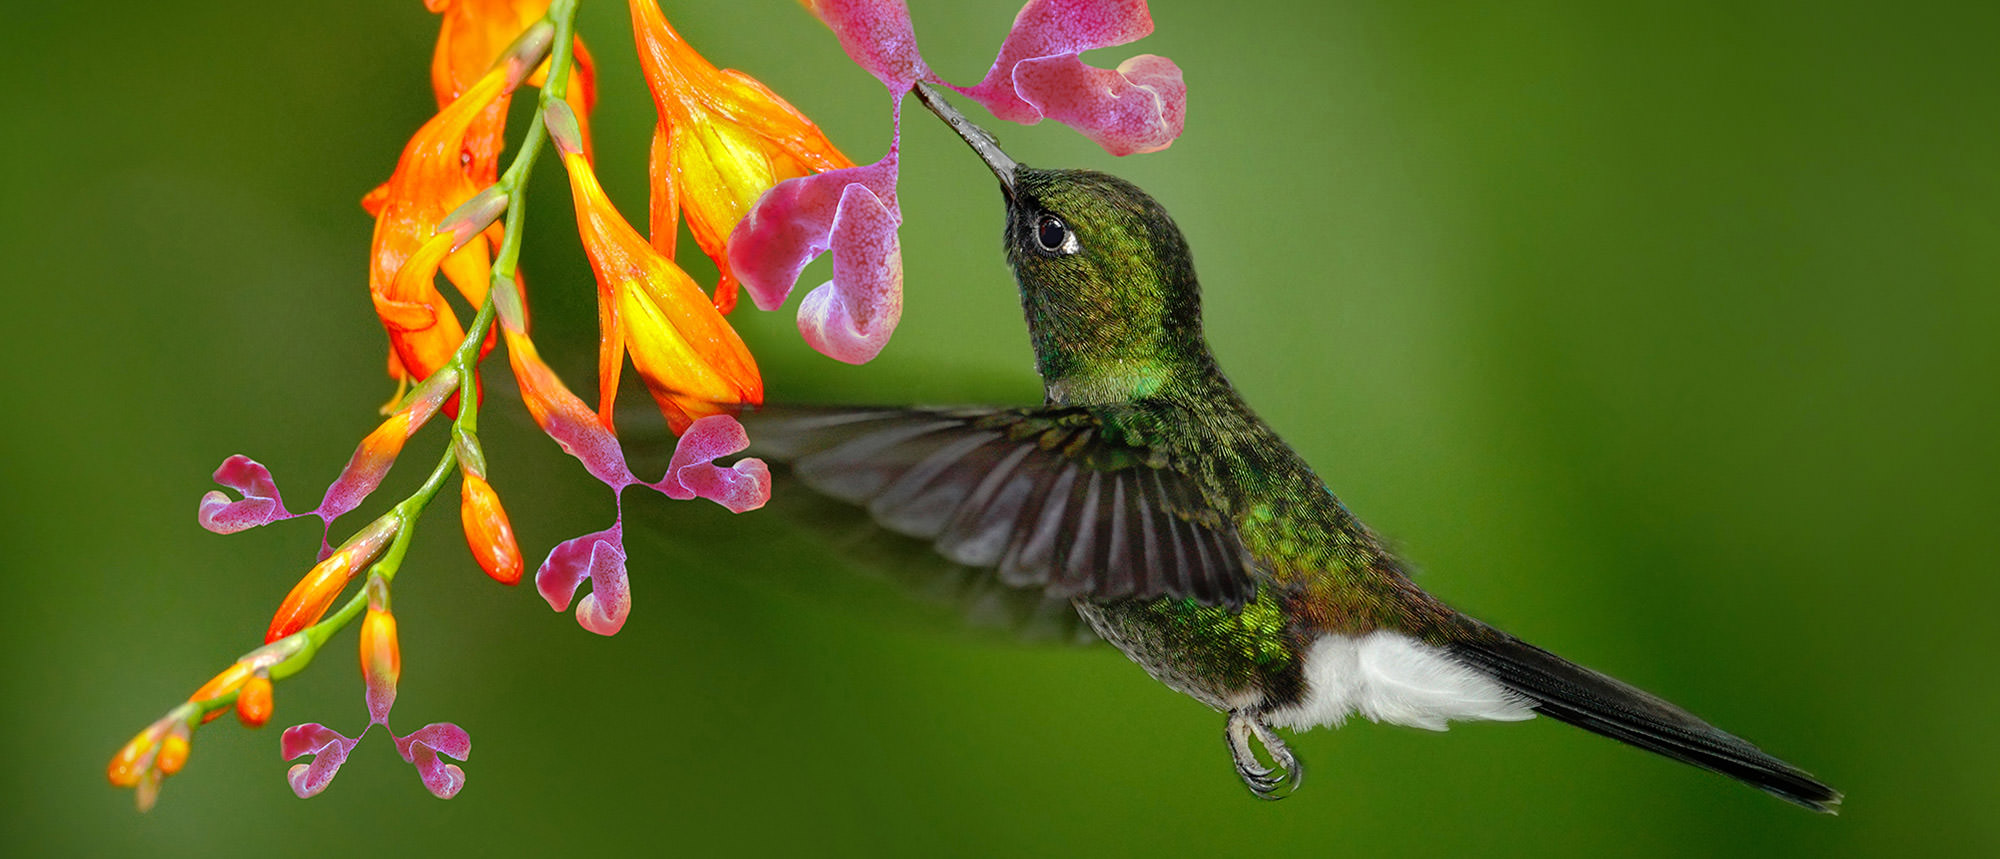 hummingbirdSlide_mini.jpg